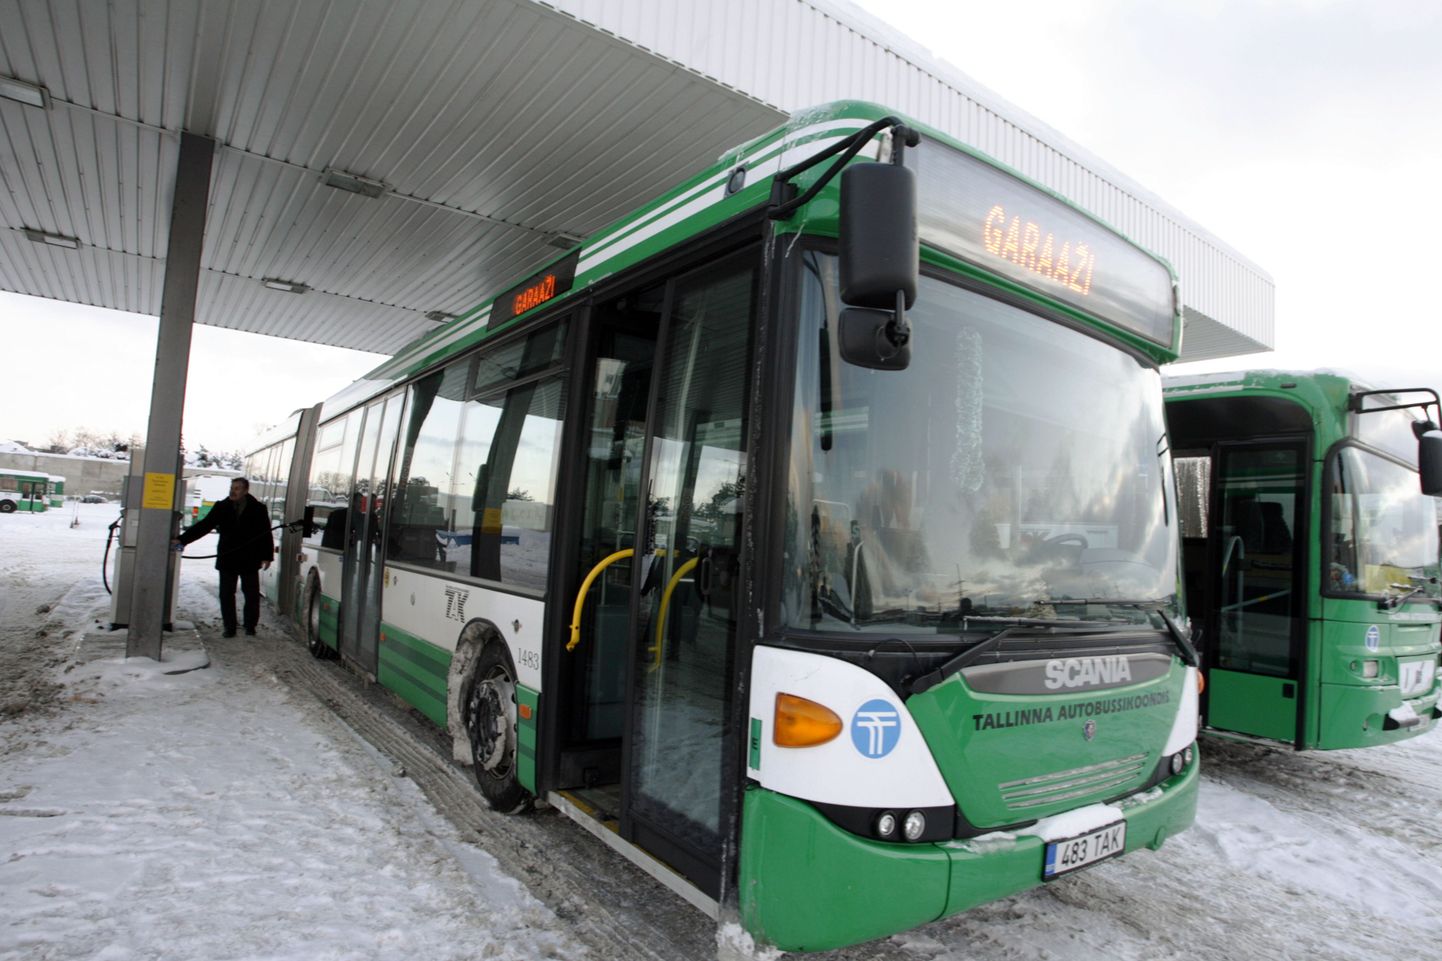 Tallinna liinibuss.